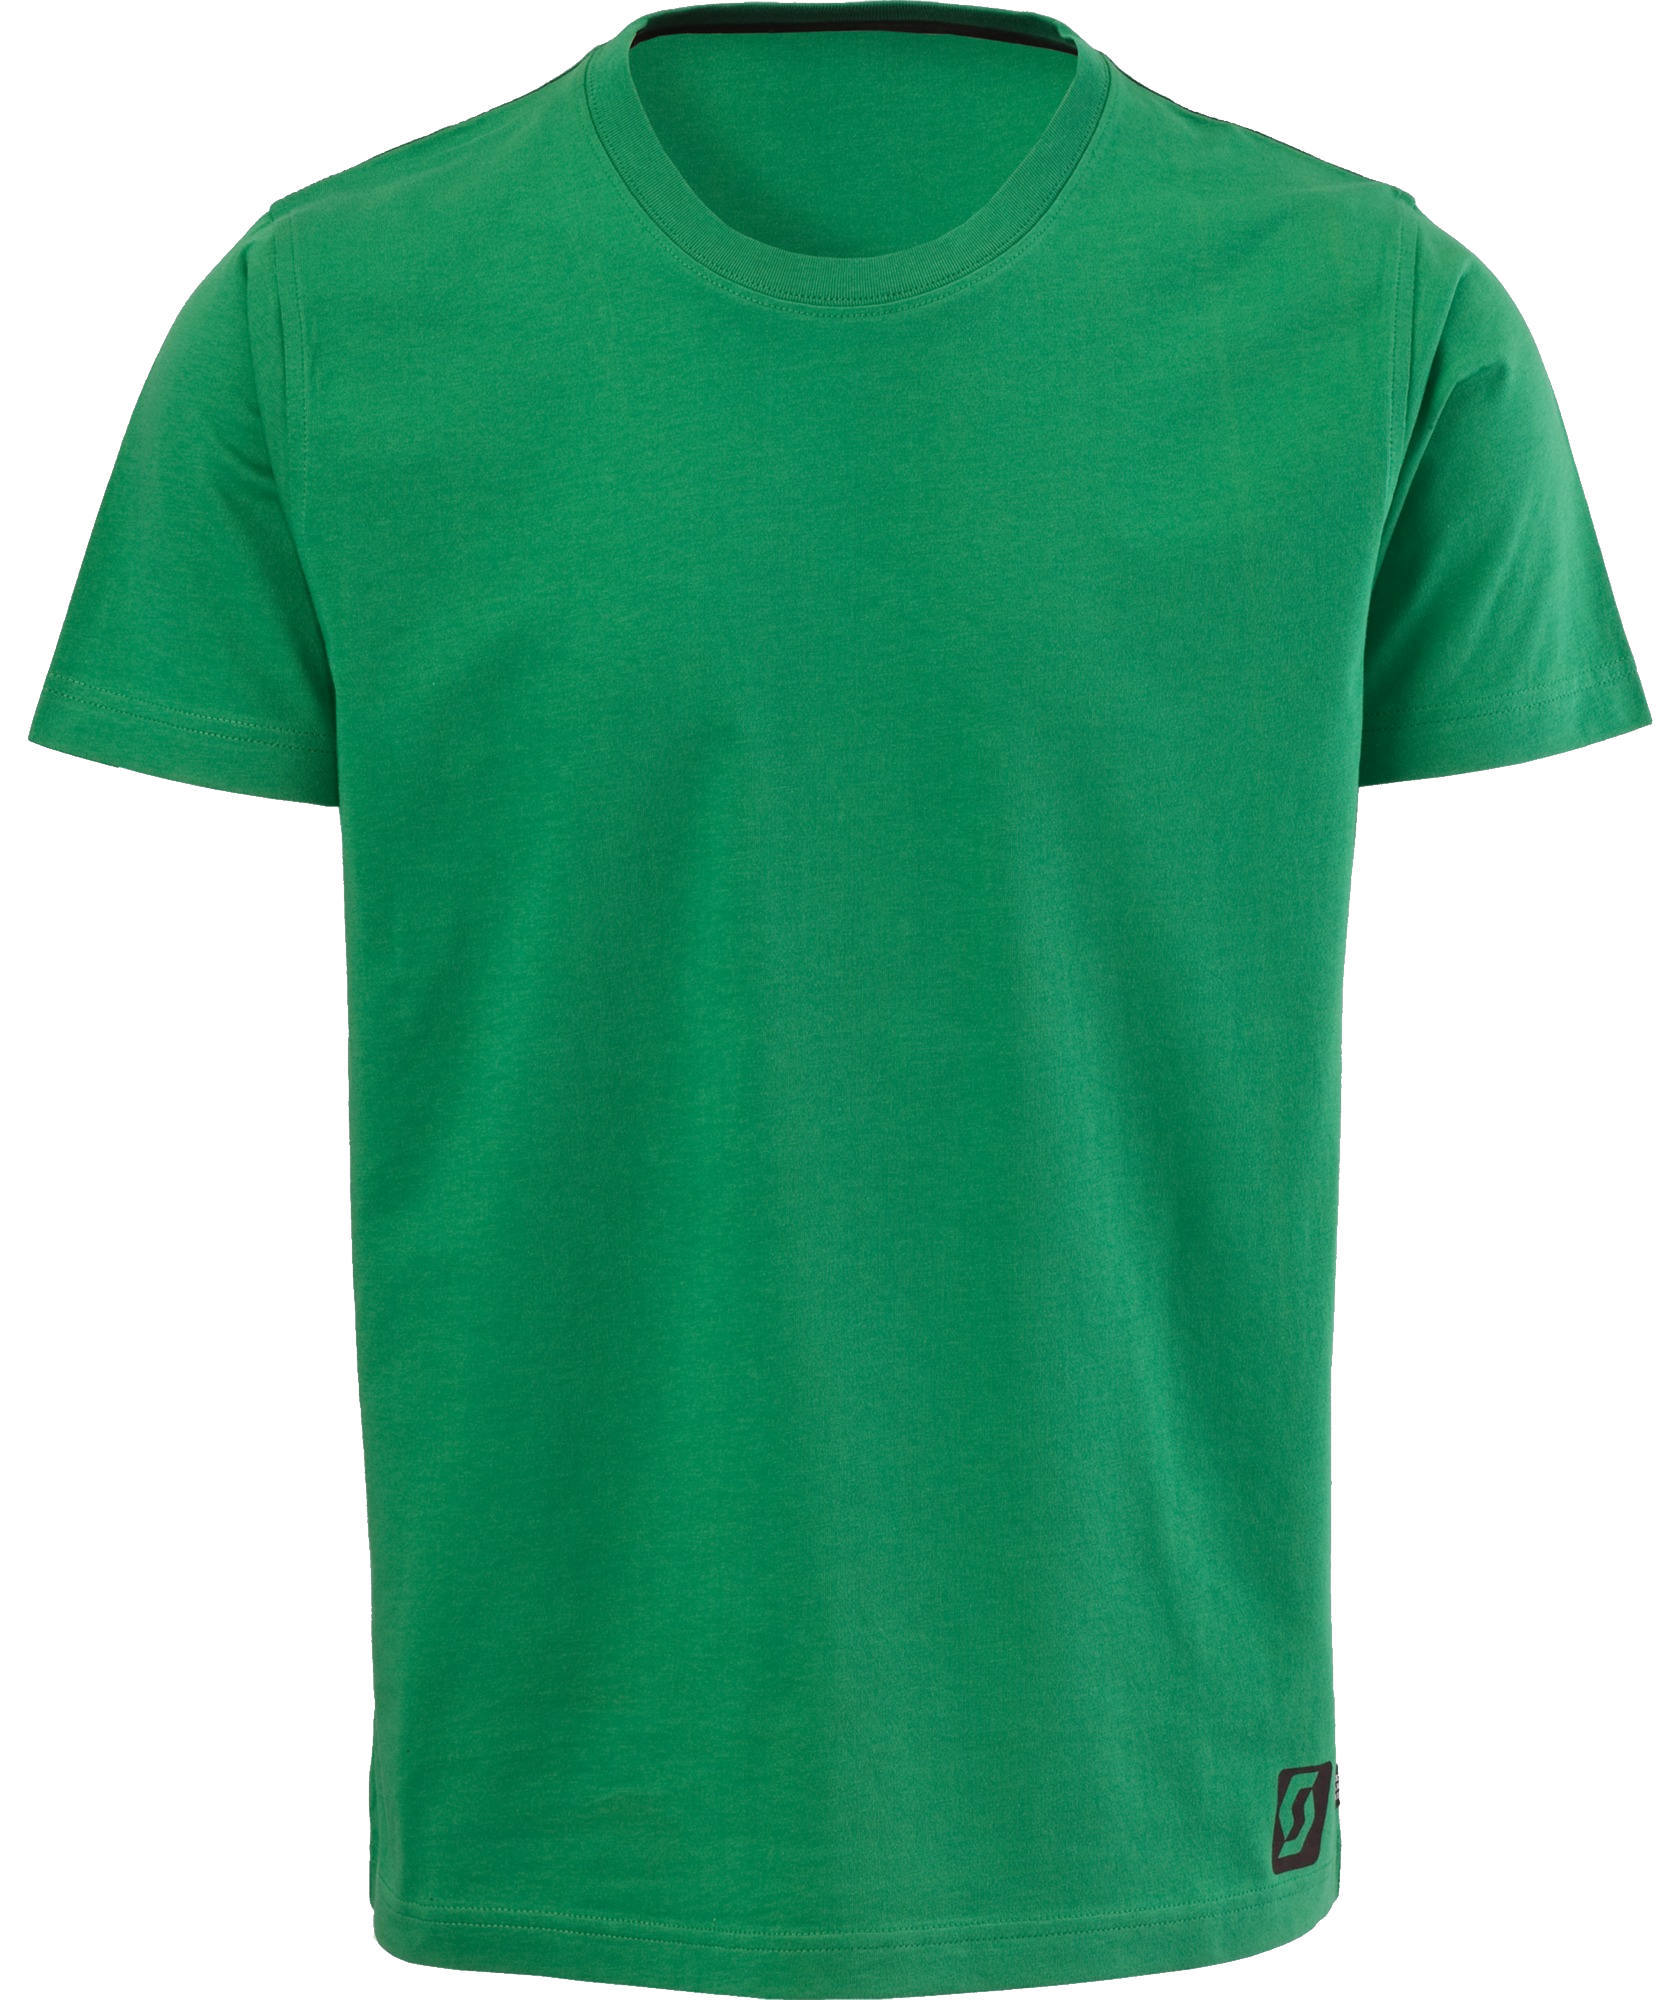 shirt clipart green shirt